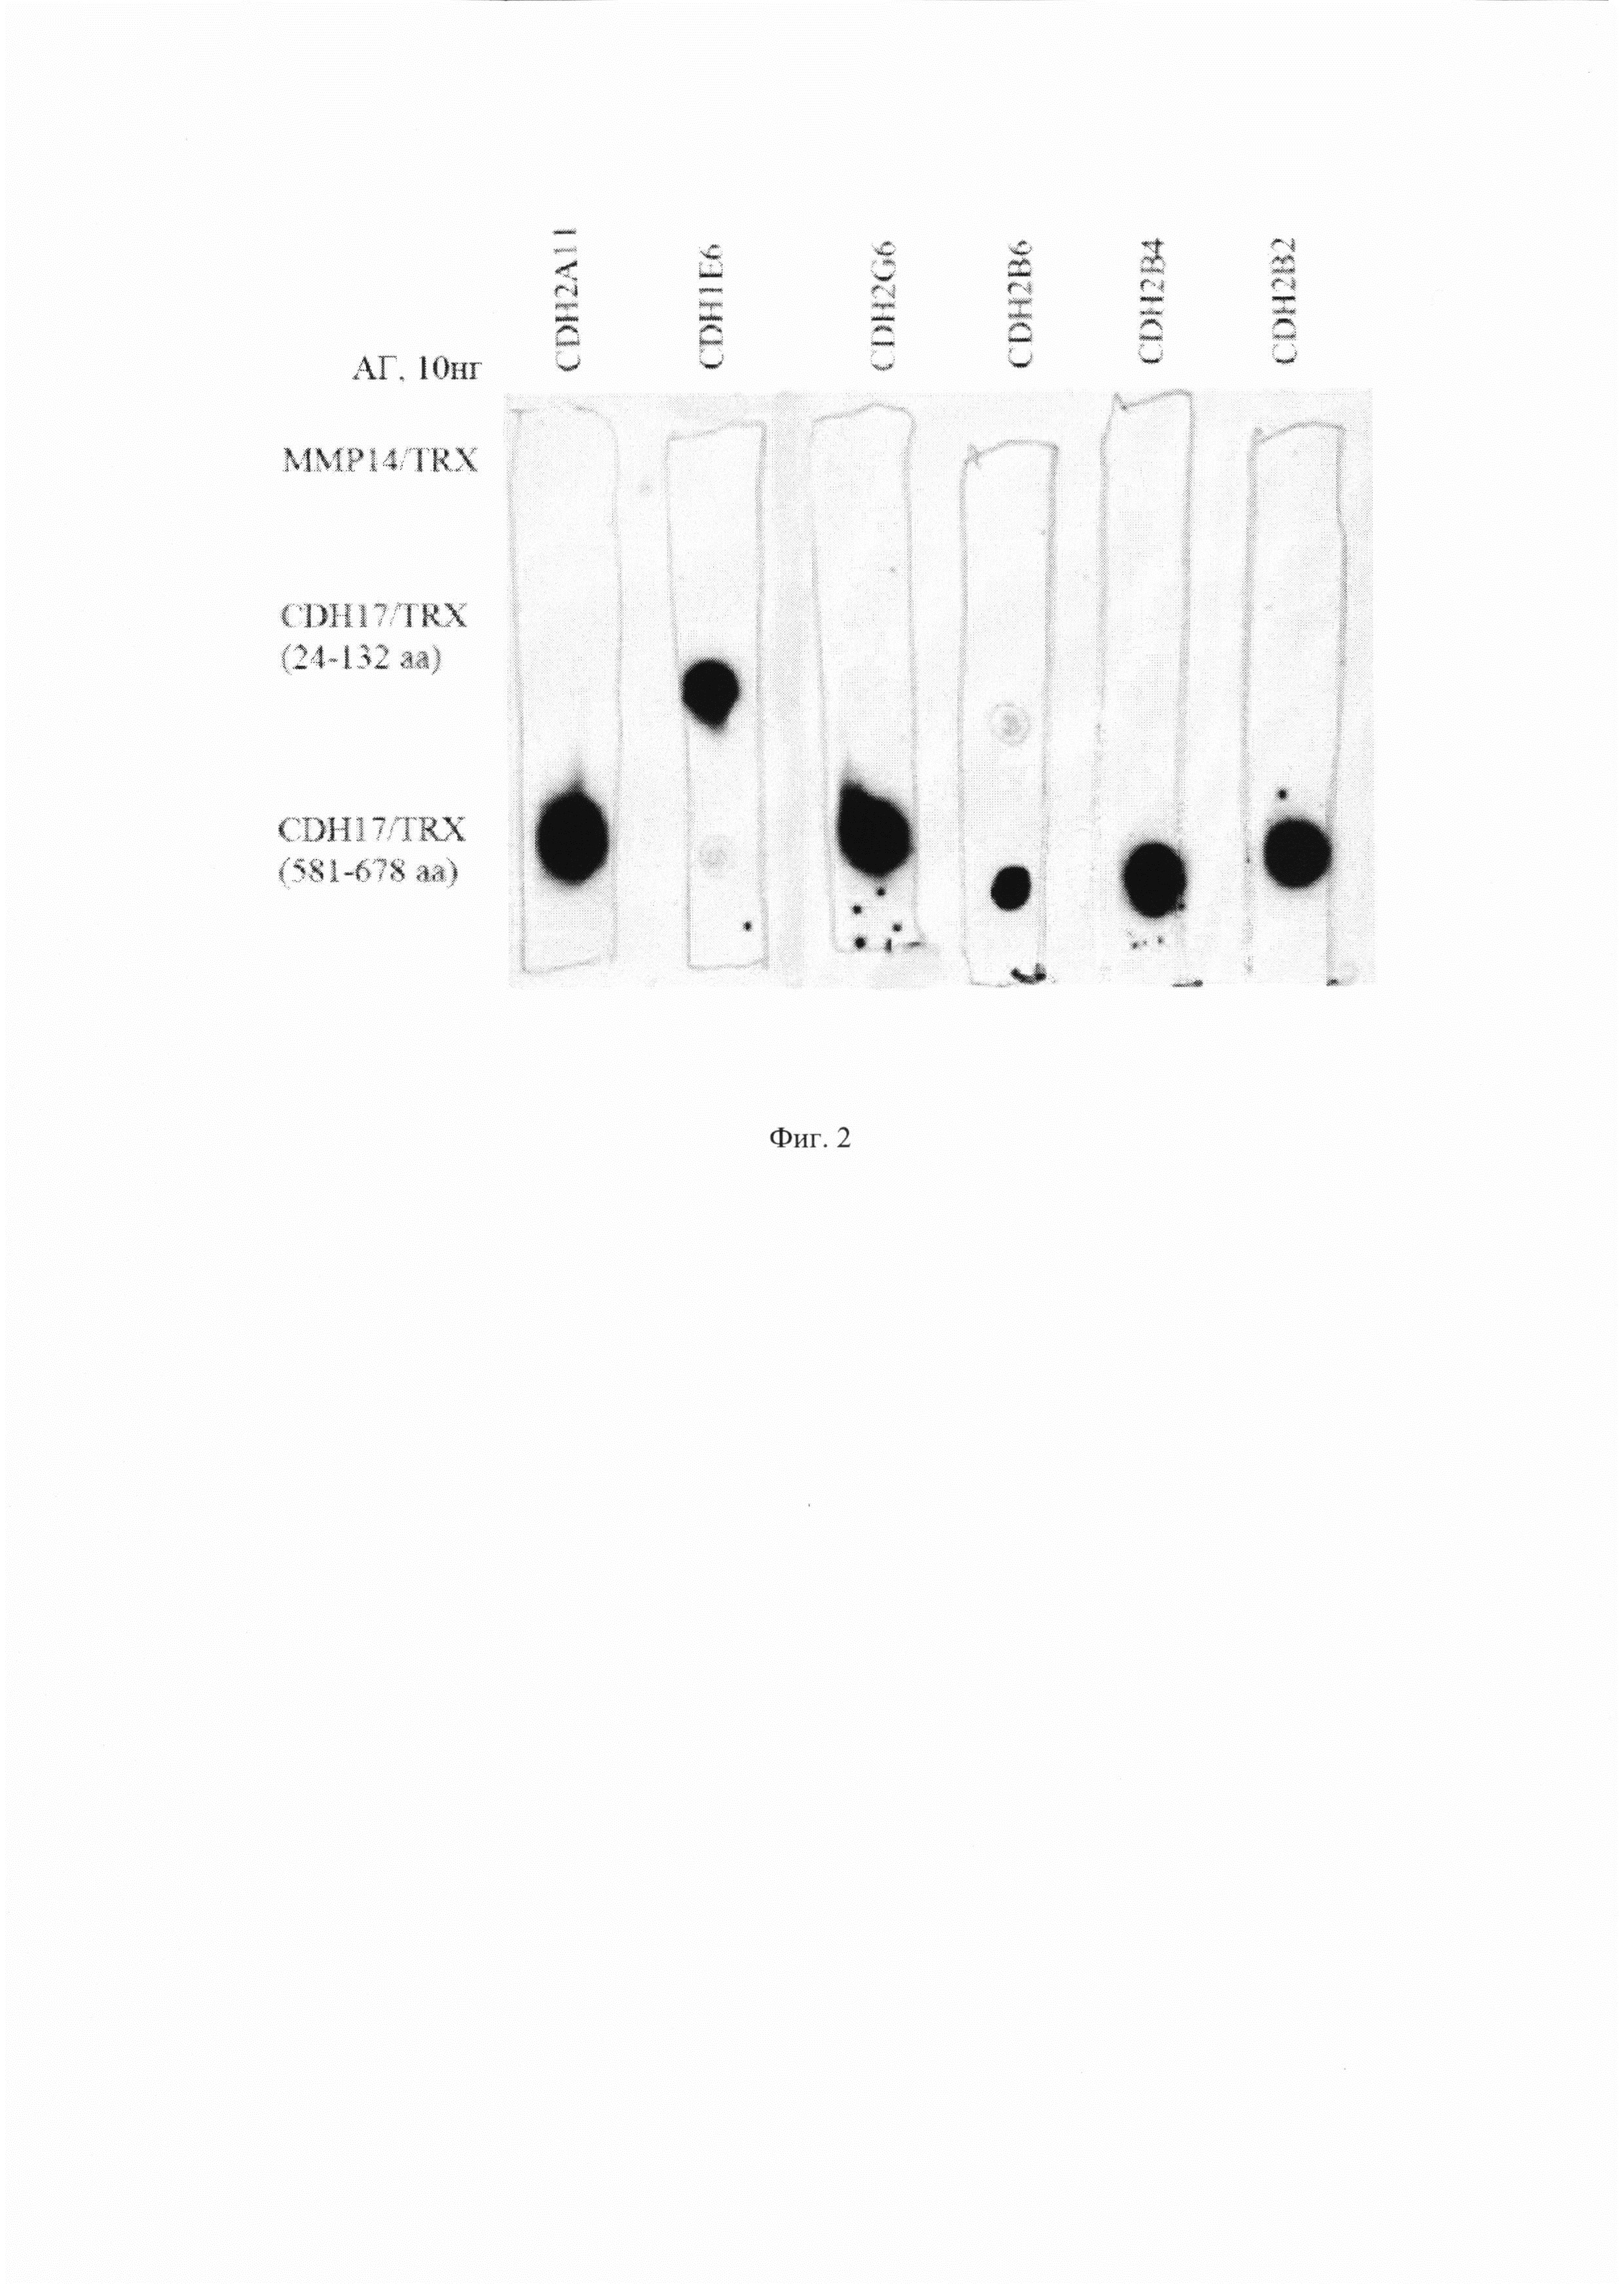 Вариабельные домены лёгкой и тяжёлой цепи мышиного моноклонального антитела против кадгерина-17 человека, антигенсвязывающий фрагмент (Fab) против кадгерина-17 человека, содержащий указанные домены